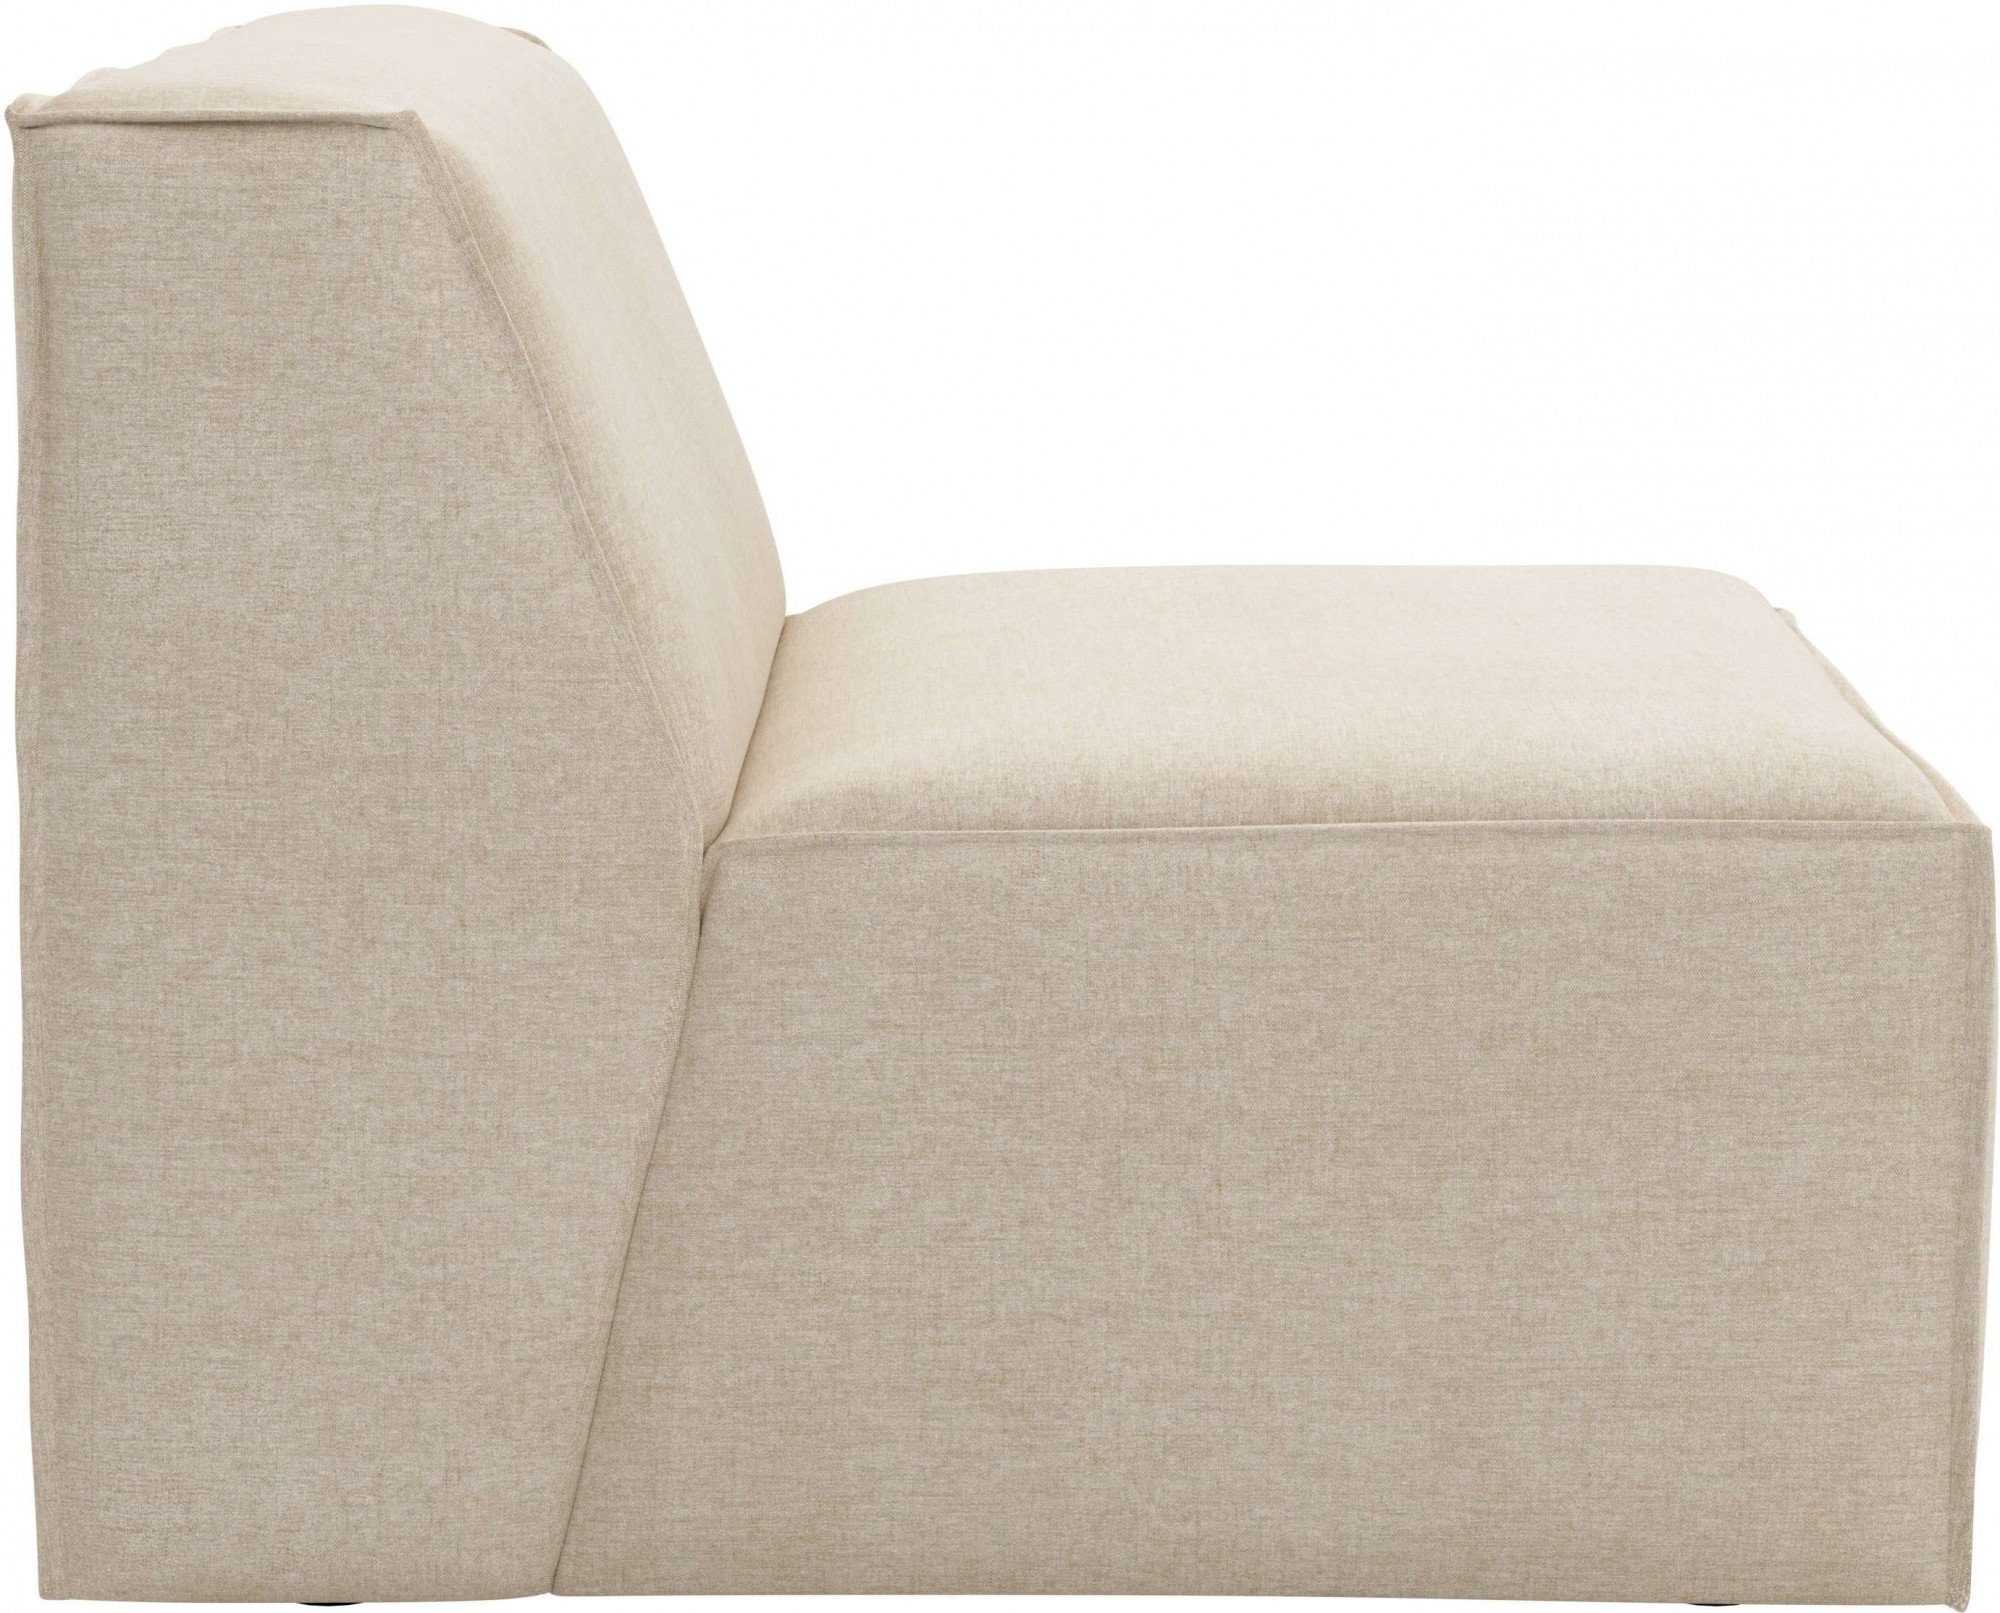 natural Polsterung Modulen Komfortschaum, RAUM.ID mit und Norvid, an Auswahl modular, große Sofa-Mittelelement